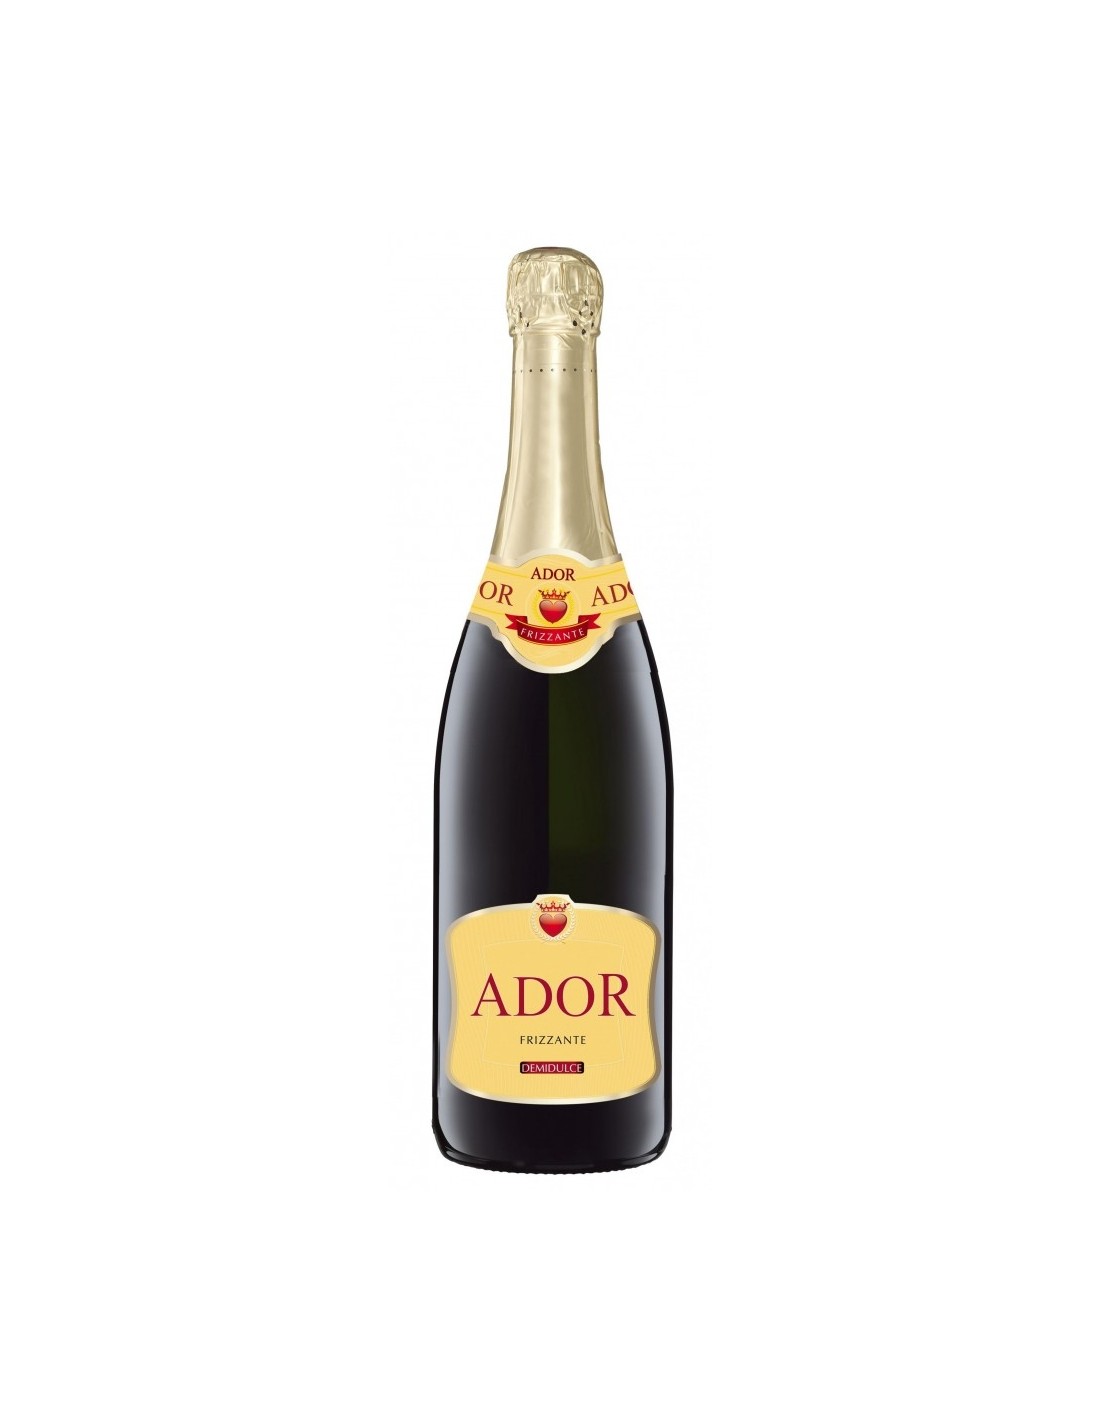 Vin frizzante alb demidulce, Ador, 10.5% alc., 0.75L alcooldiscount.ro